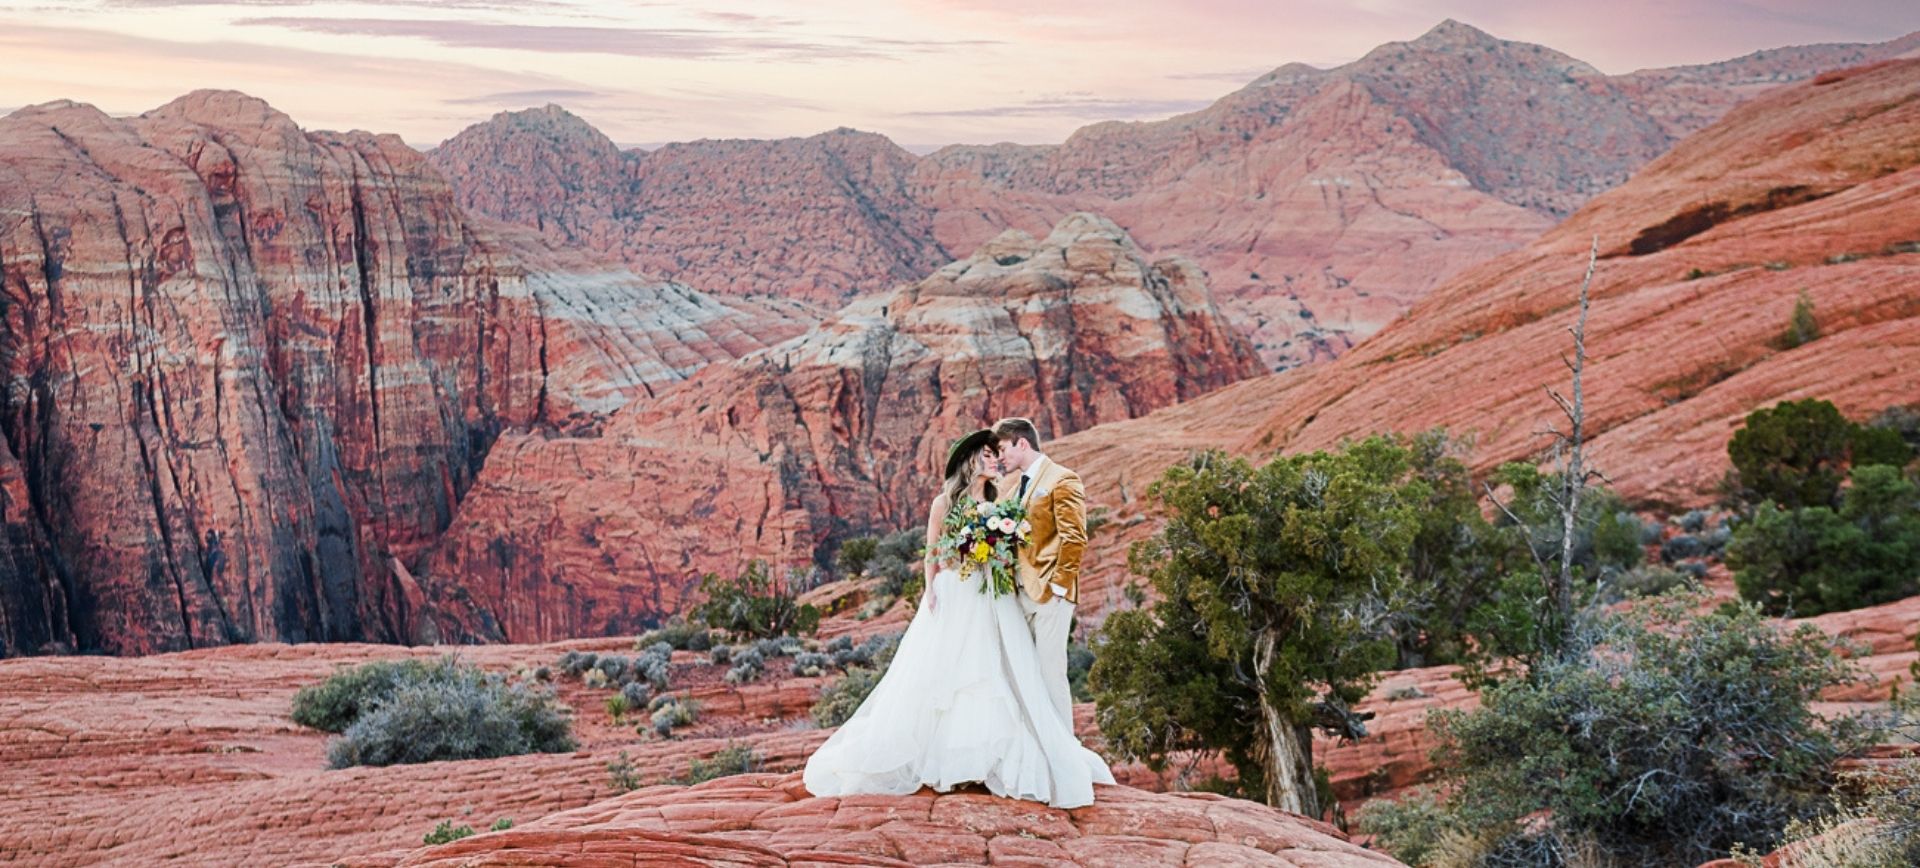 utah elopement red rocks - sunset wedding photos